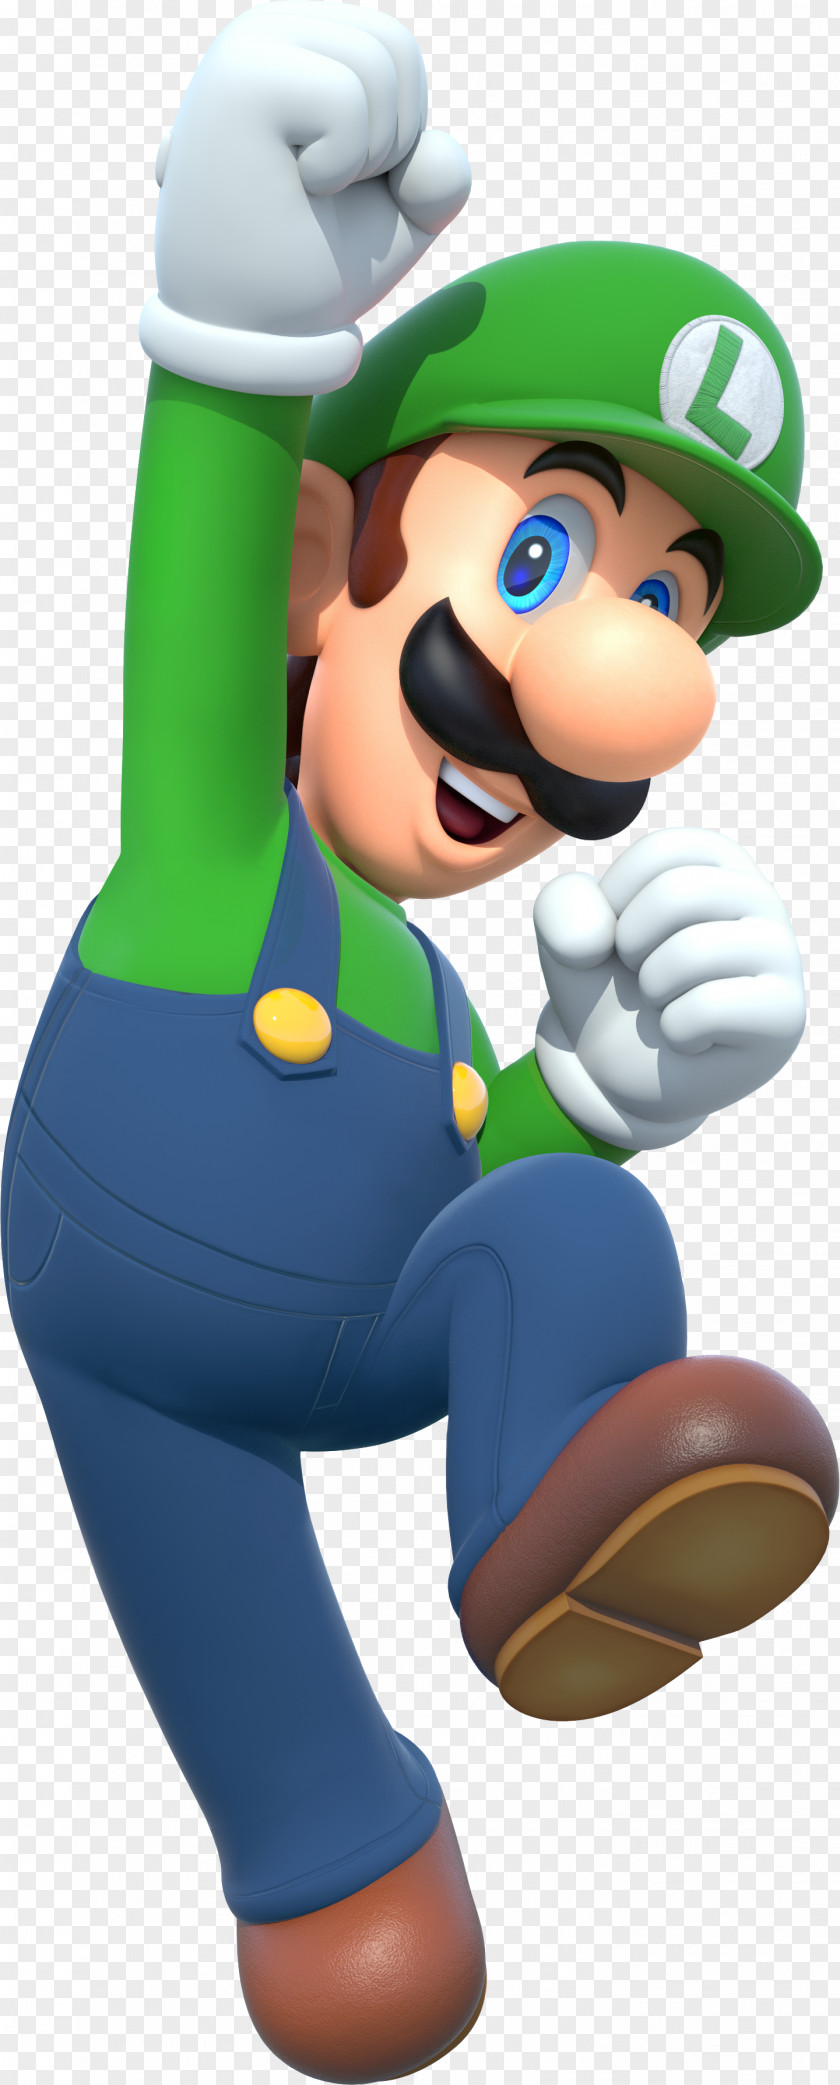 Luigi Super Mario Bros. Toad PNG